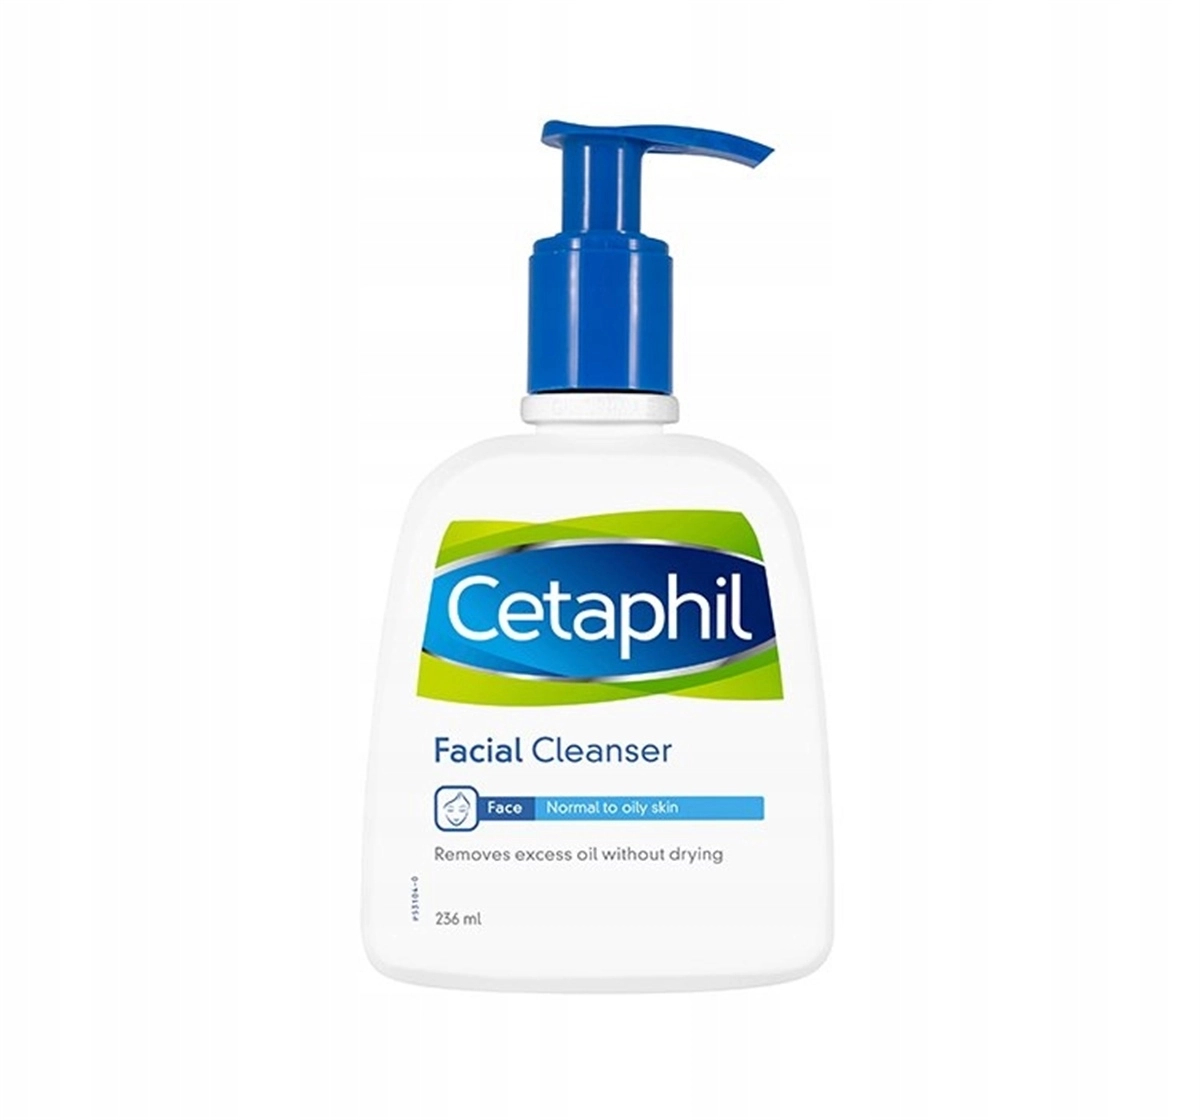 Cetaphil Facial Cleanser Yüz Temizleme Yağlı Cilt Temizleyici Jel 236 ml